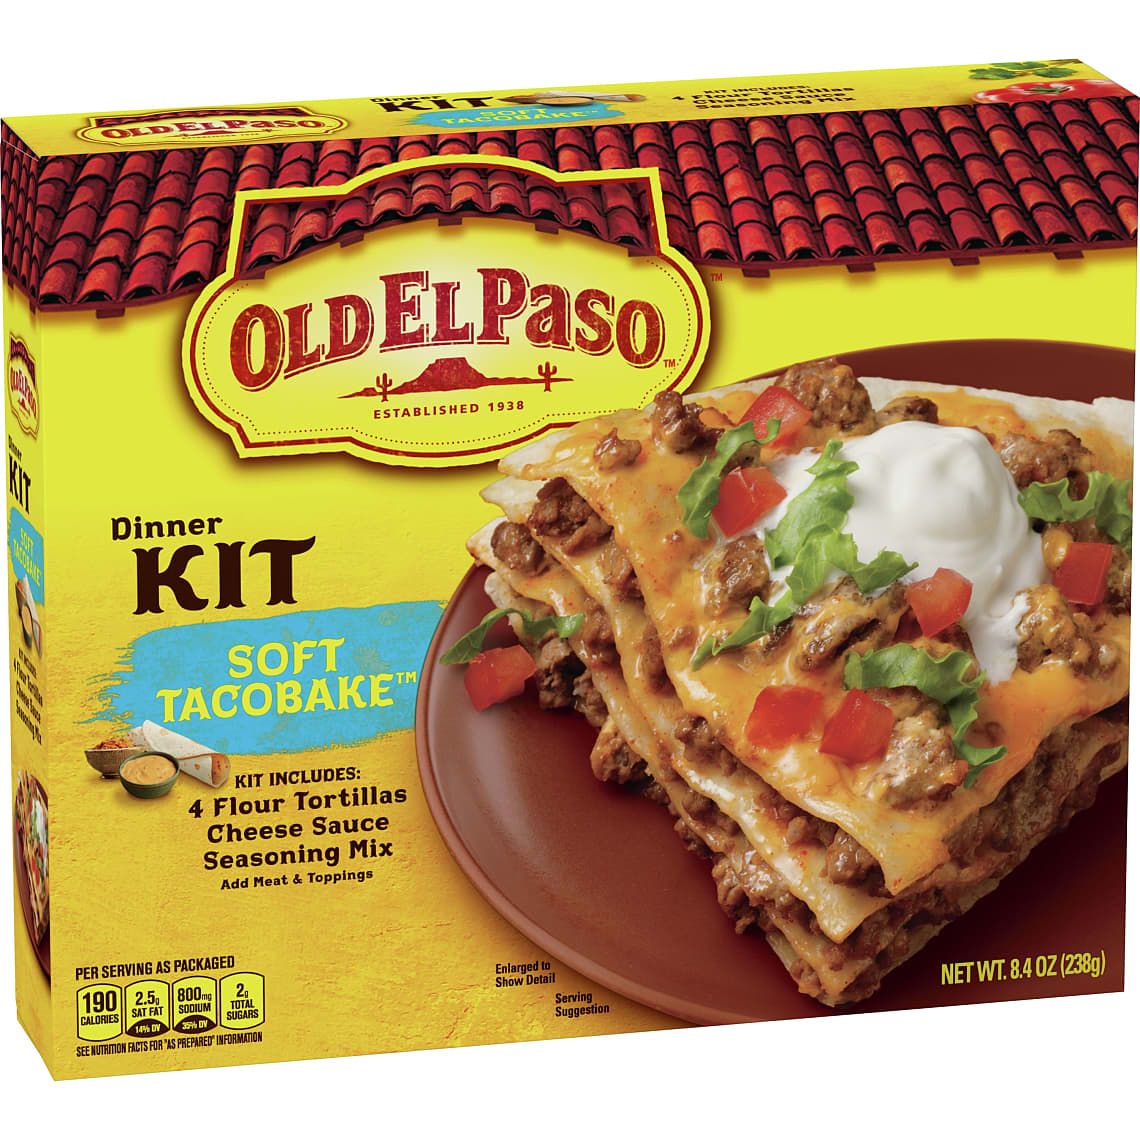 Old El Paso Dinner Kit, Soft Tacobake, 8.4 oz Box